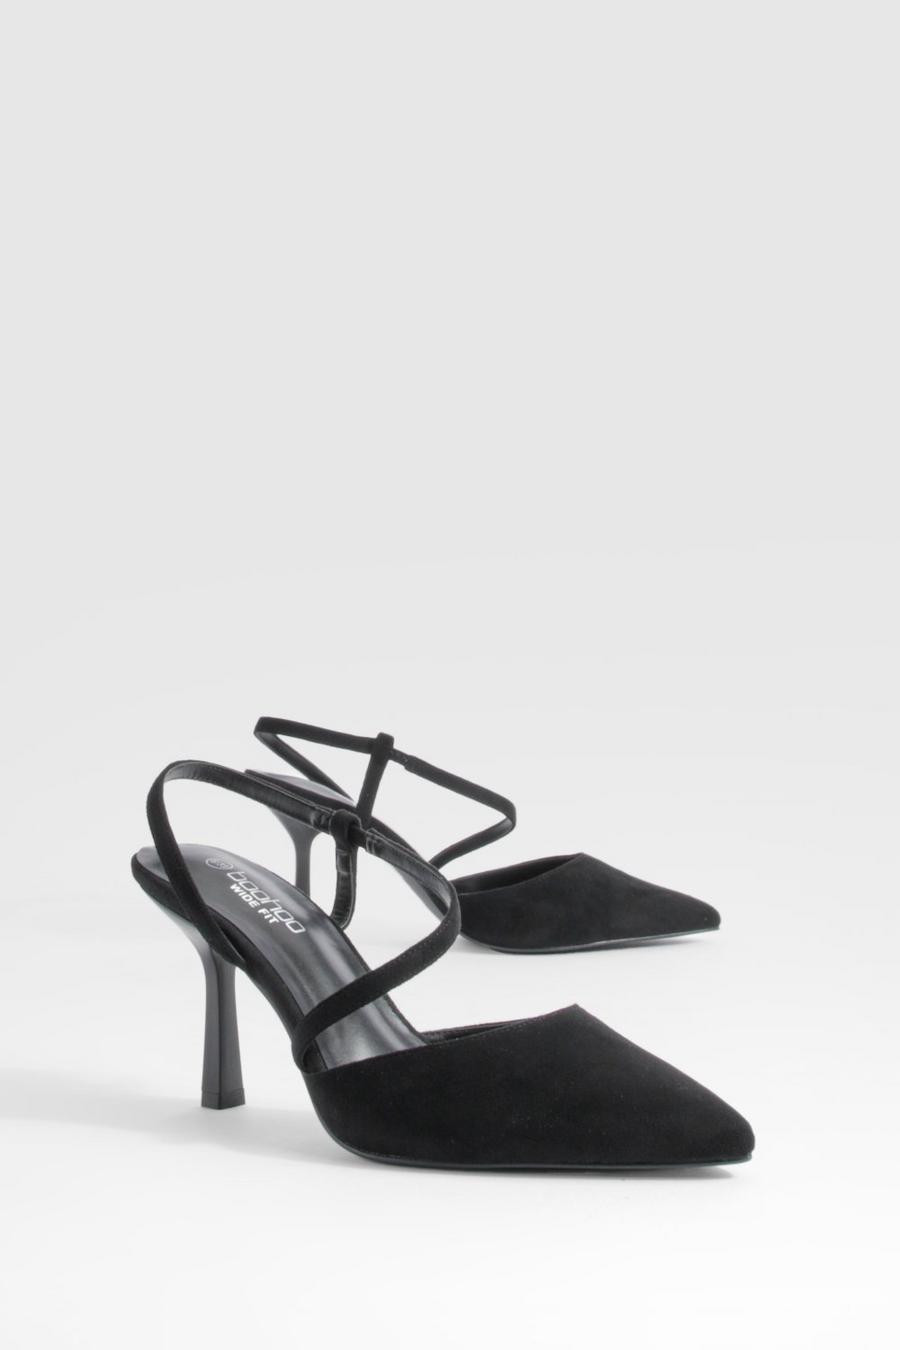 Zapatos de salón de holgura ancha asimétricos con tiras, Black